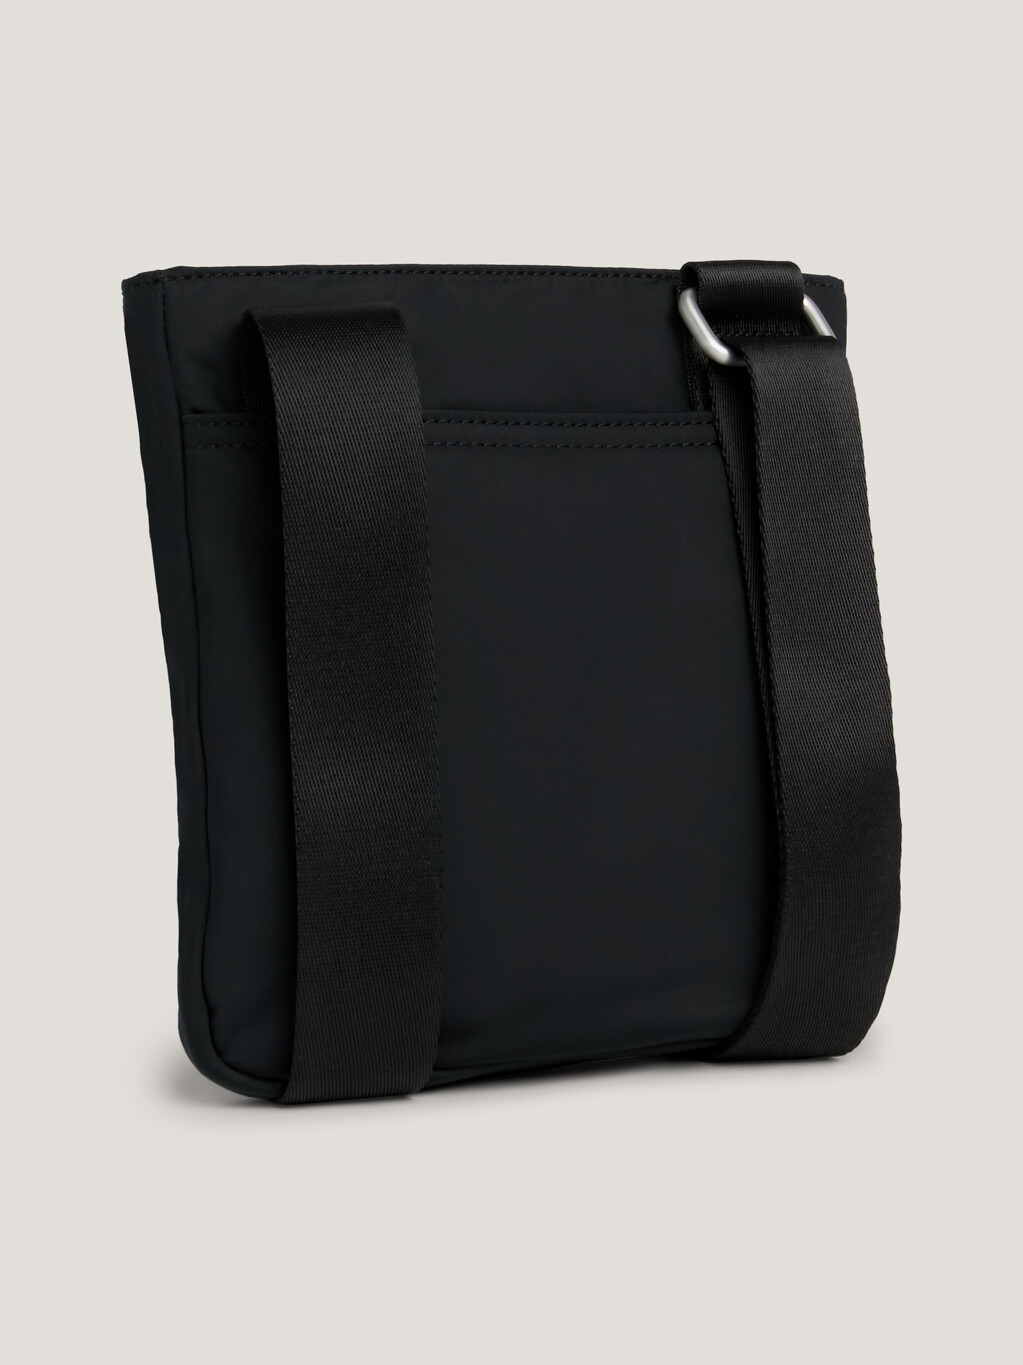 Signature Small Crossover Bag, Black, hi-res